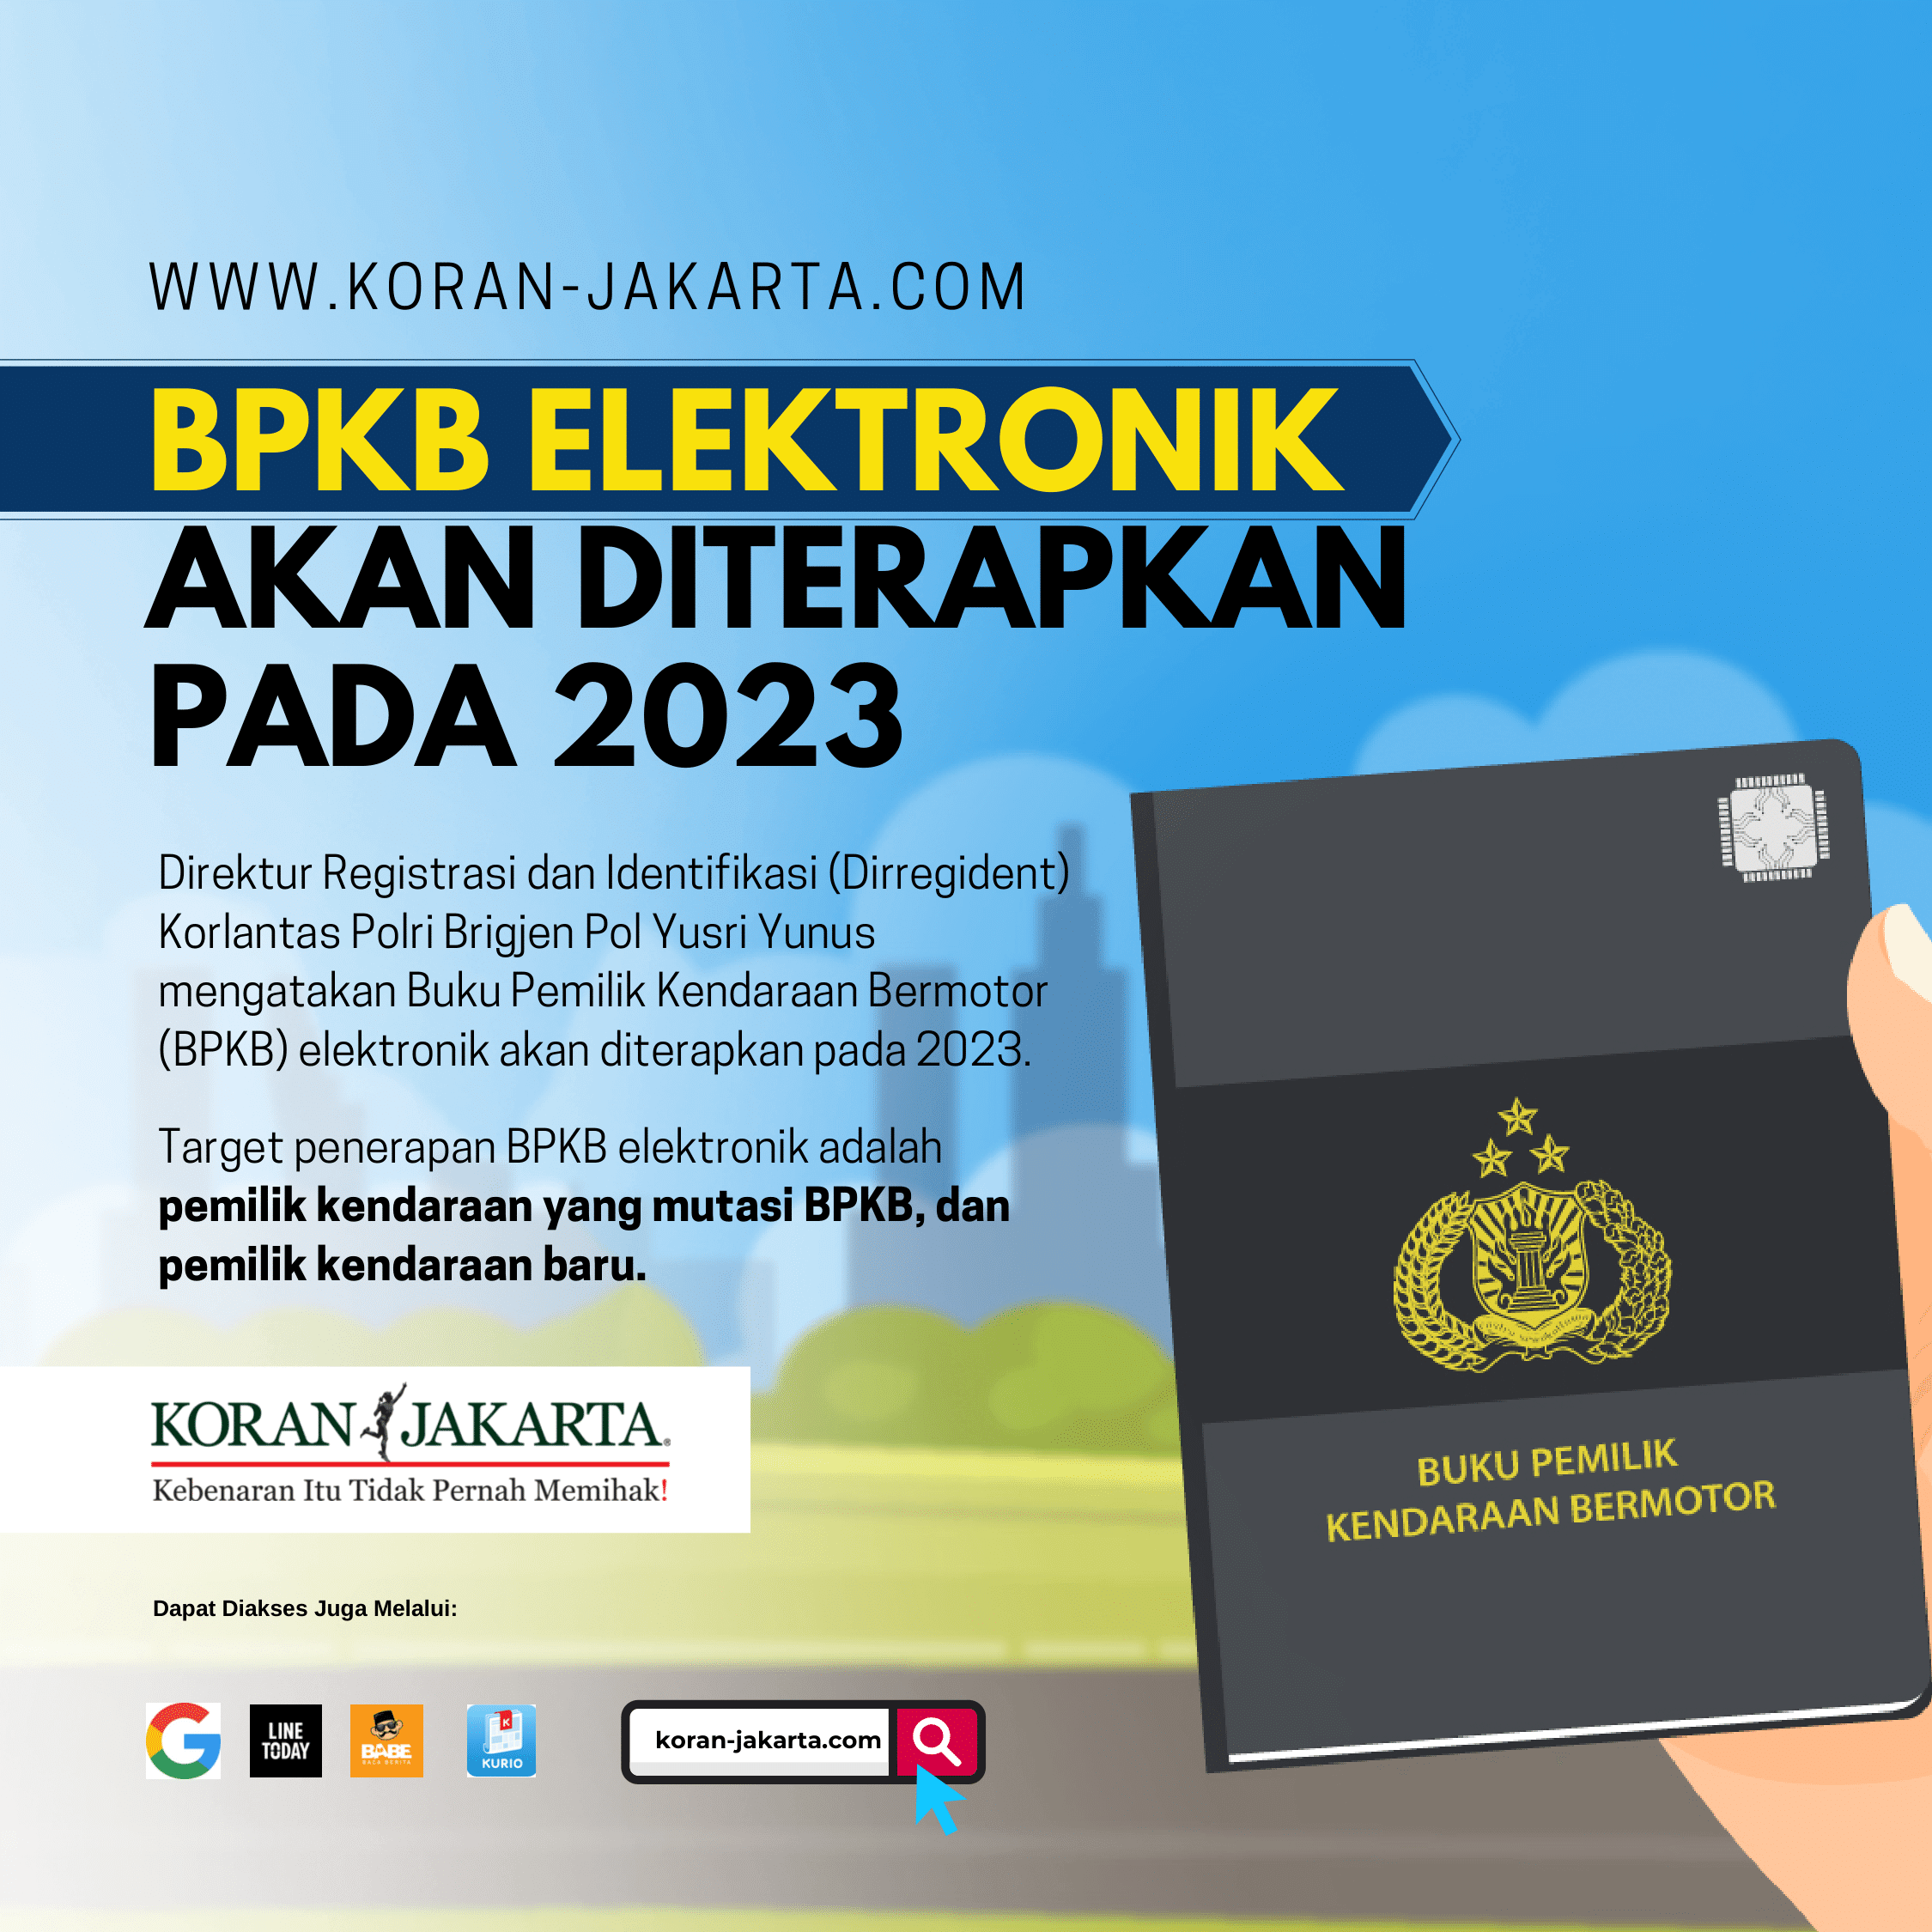 BPKB Elektronik Akan Diterapkan Pada 2023